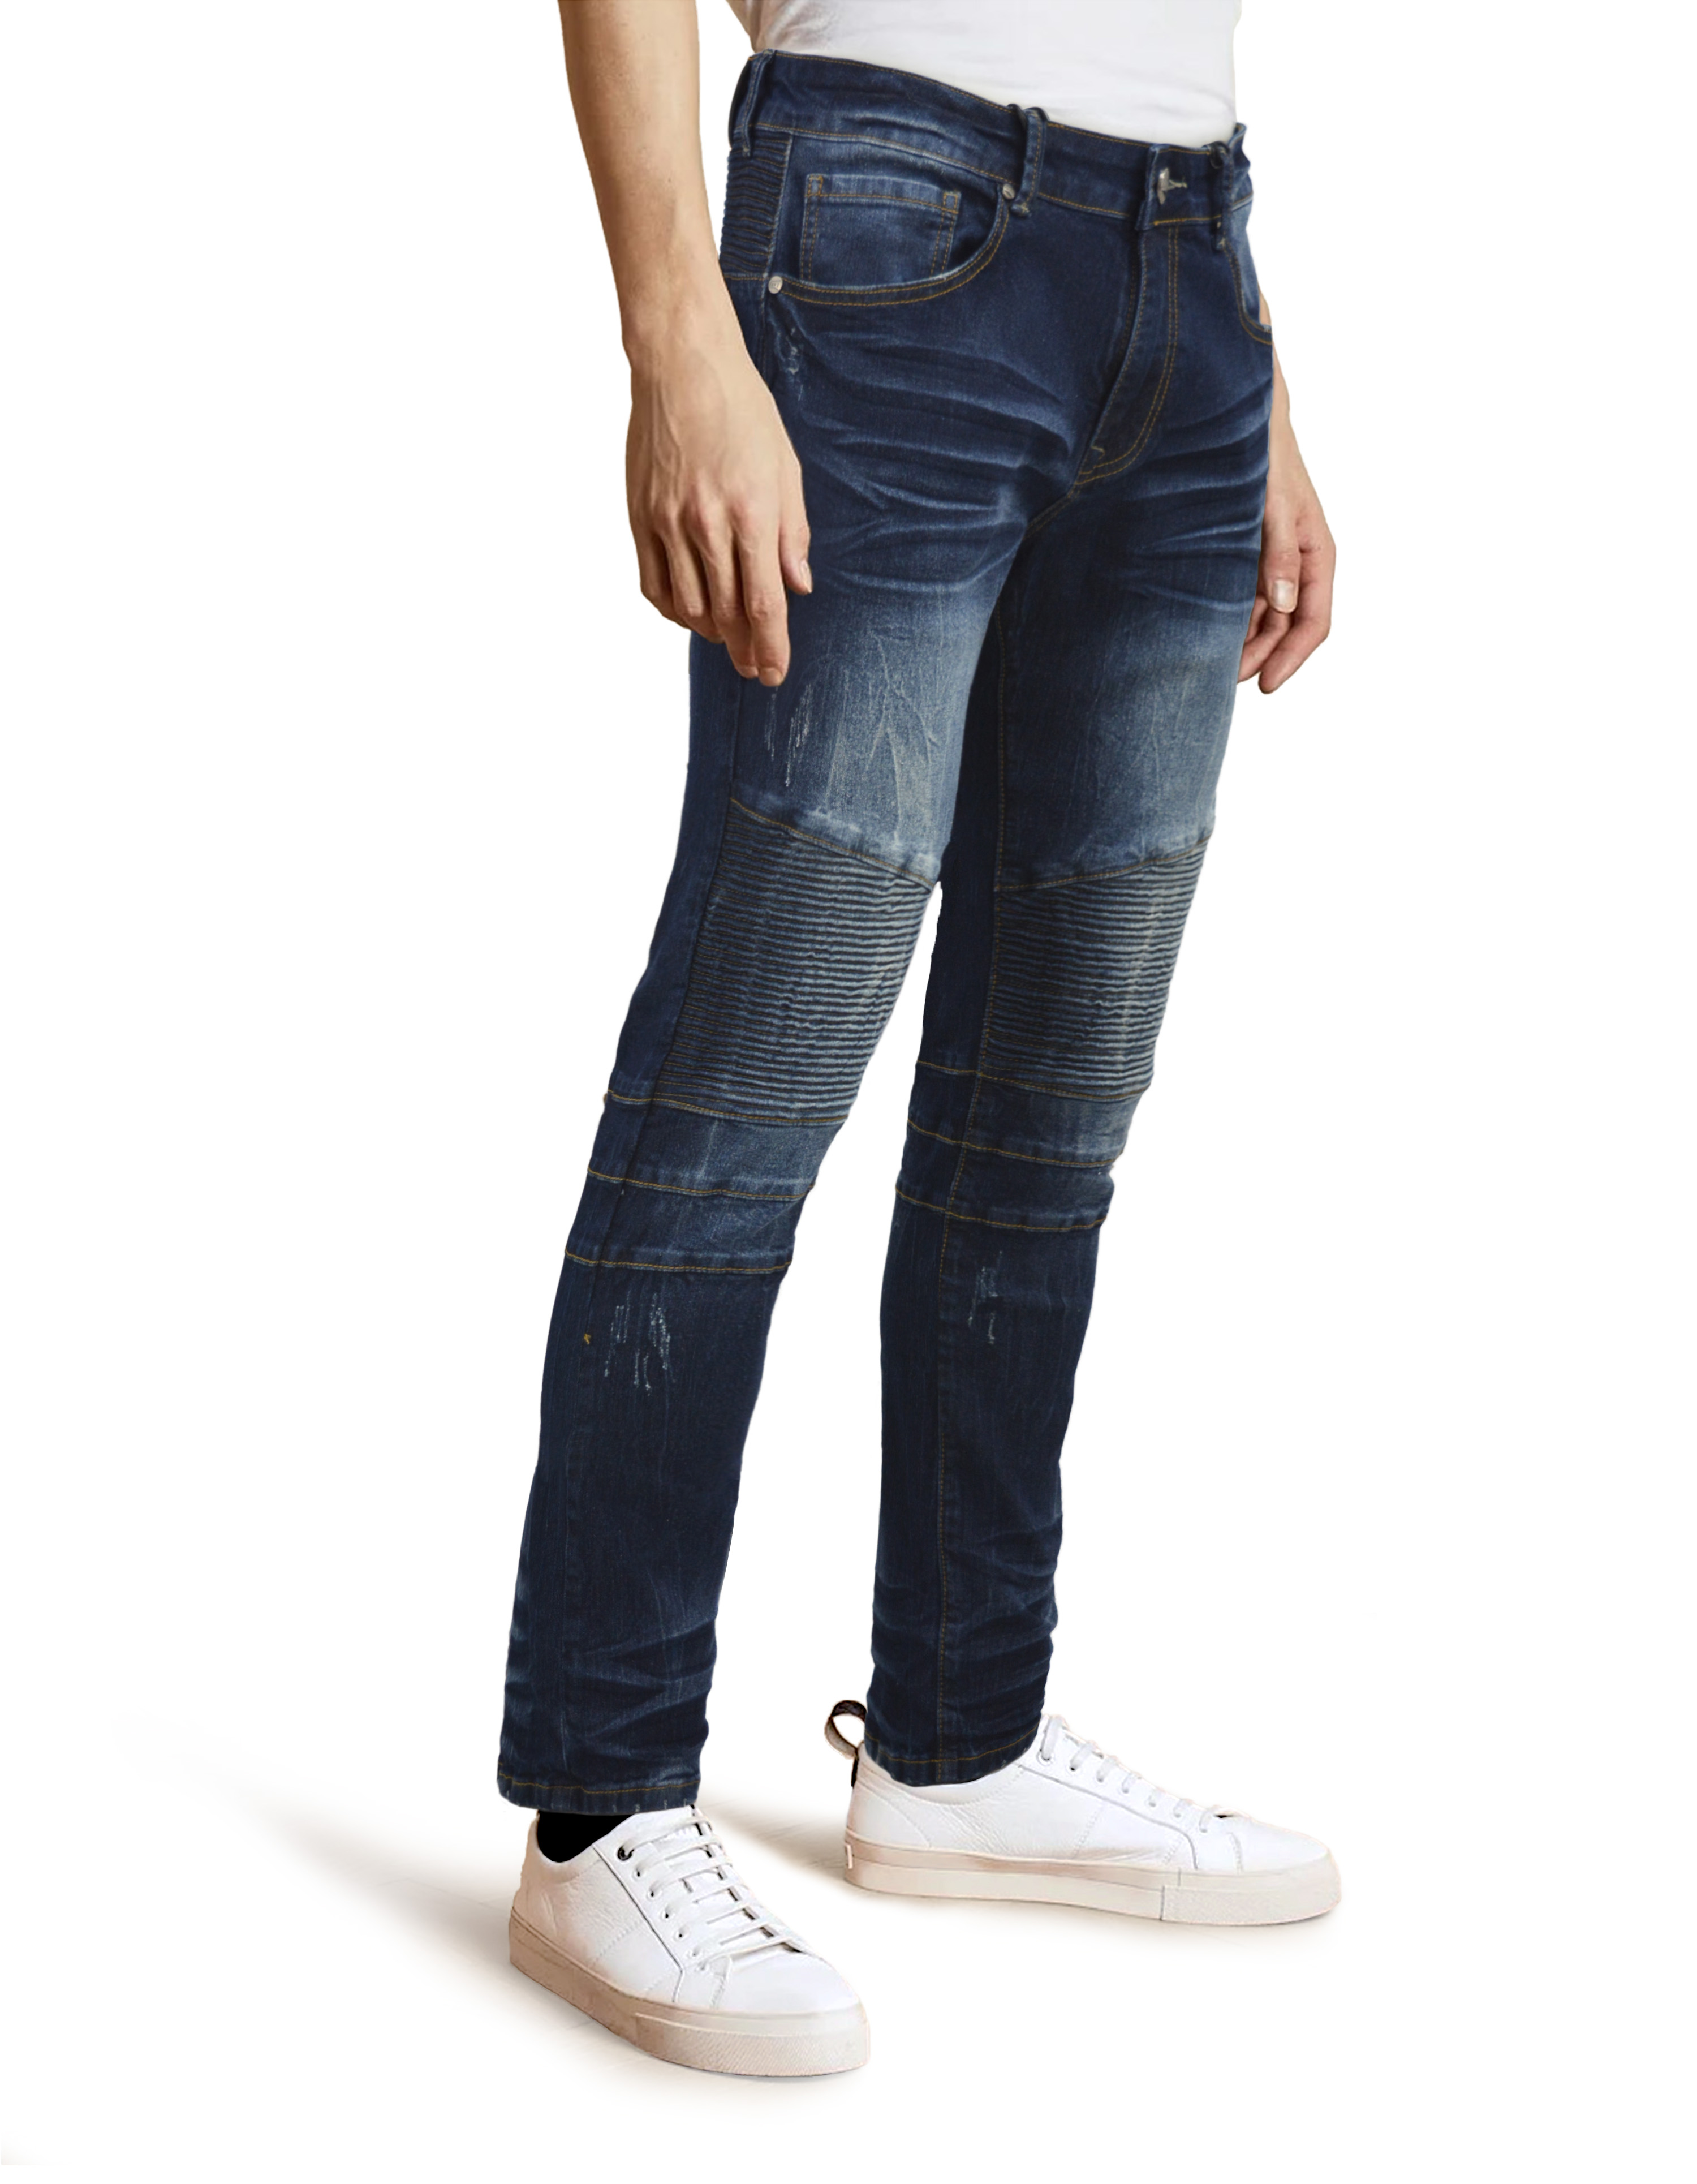 RAW X Men's Slim Fit Skinny Biker Jean, Comfy Flex Stretch Moto Wash Rip Distressed Denim Jeans Pants - image 3 of 5